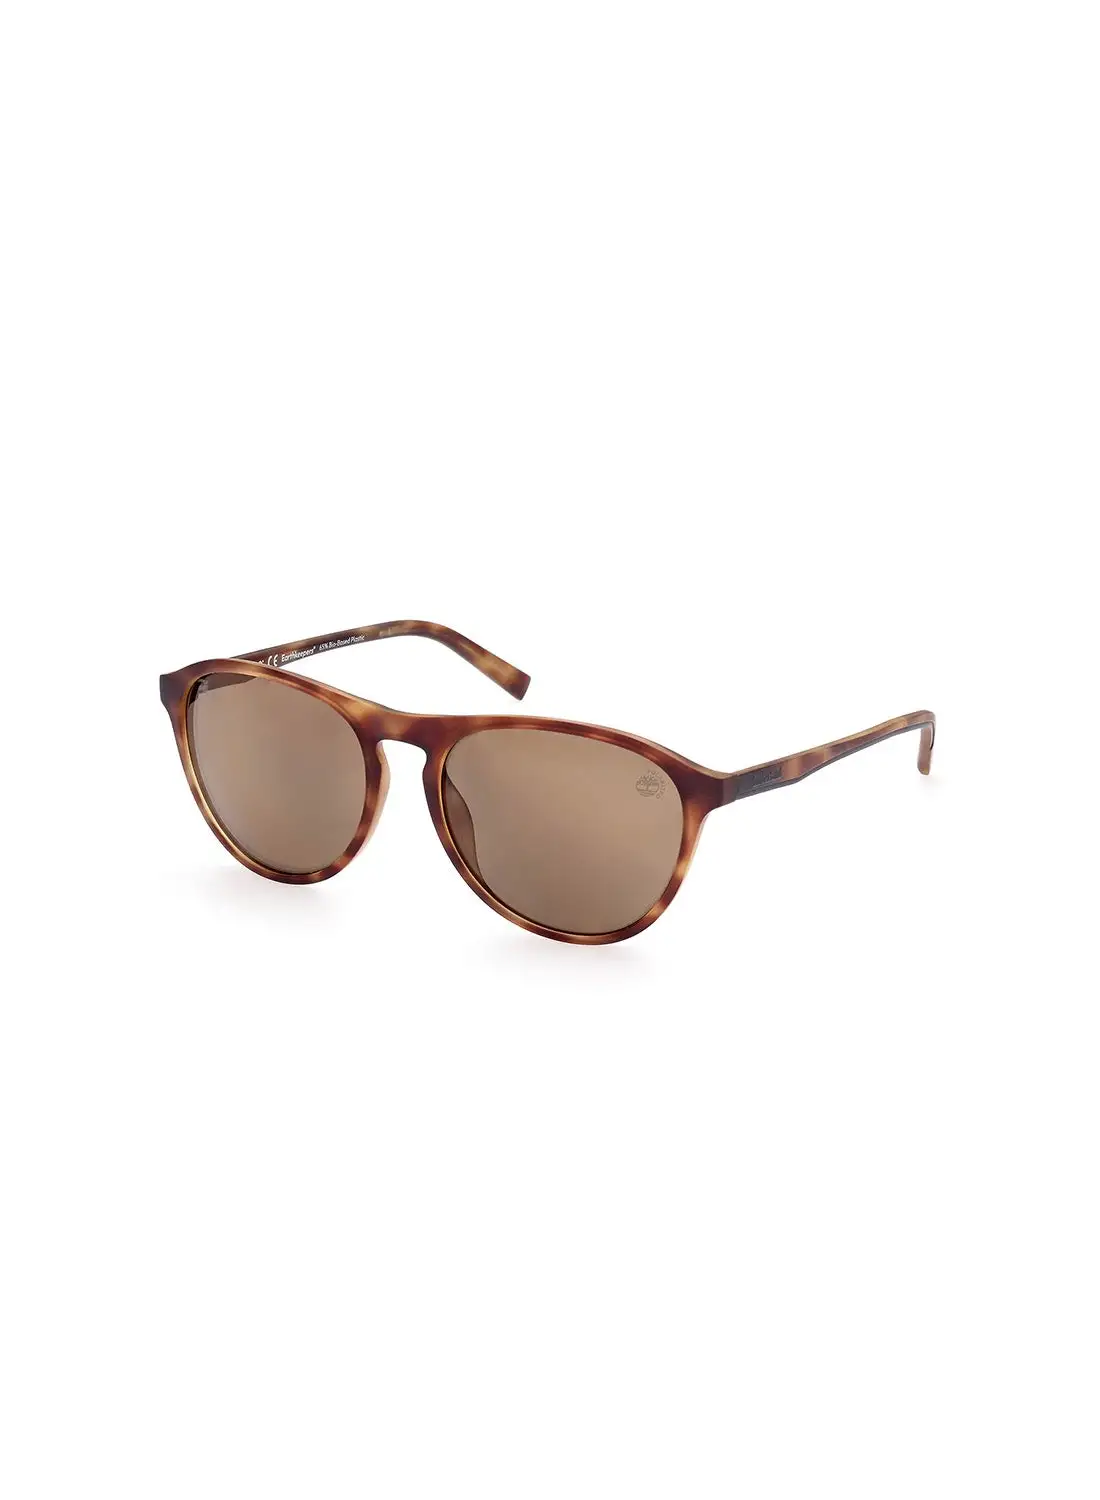 Timberland Men's Polarized Pilot Sunglasses - TB926752H57 - Lens Size: 57 Mm